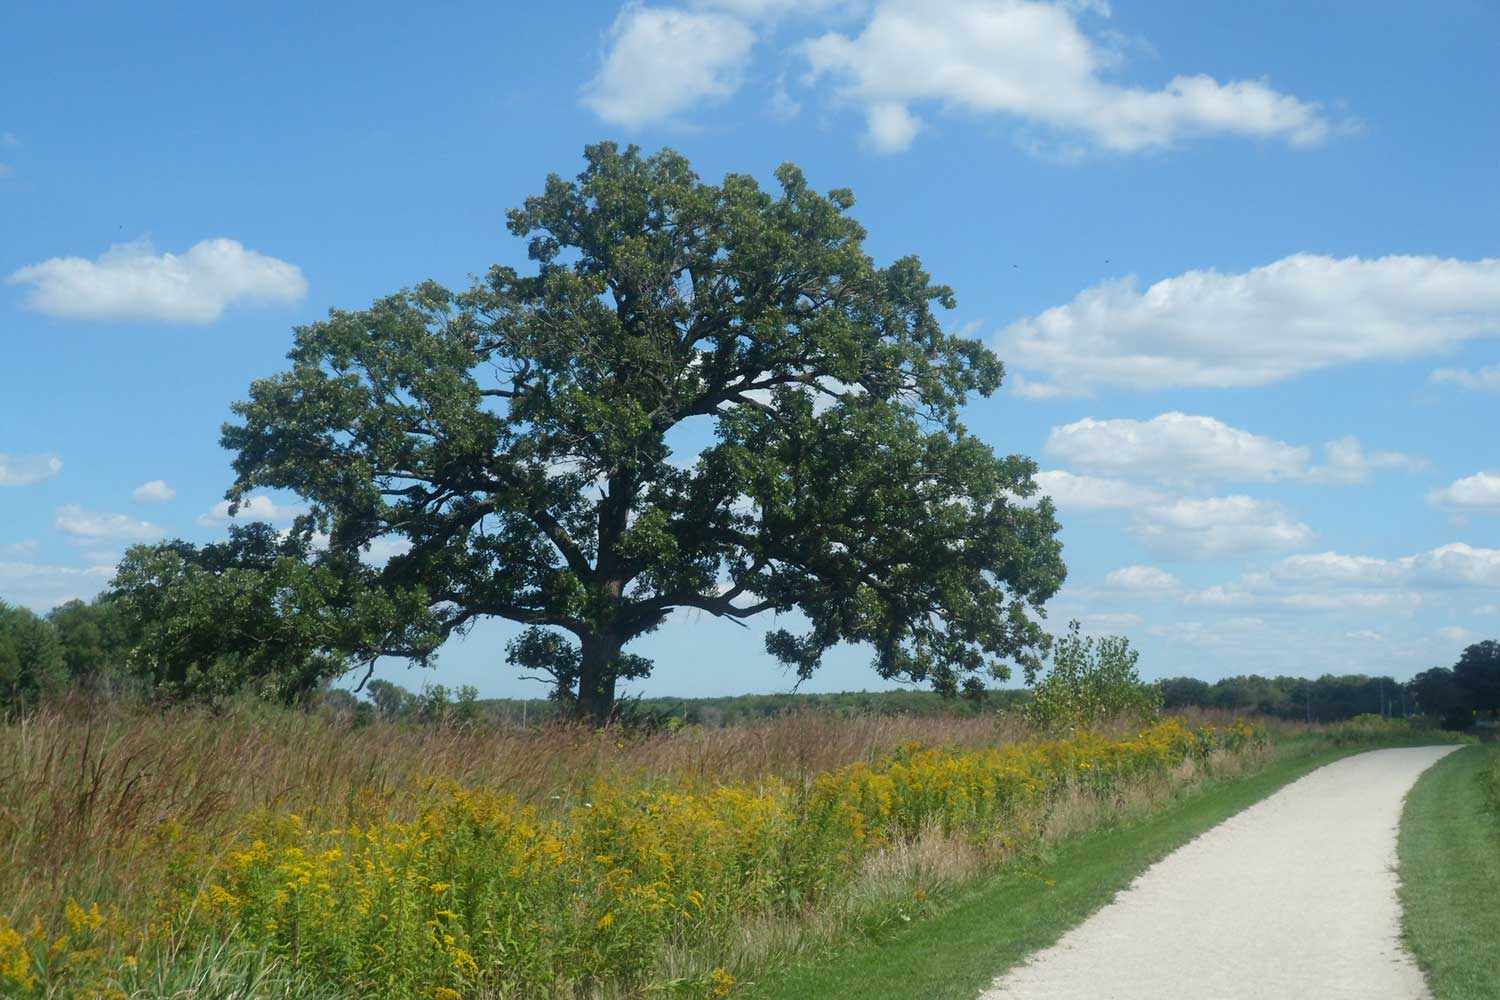 An oak tree along the trail.